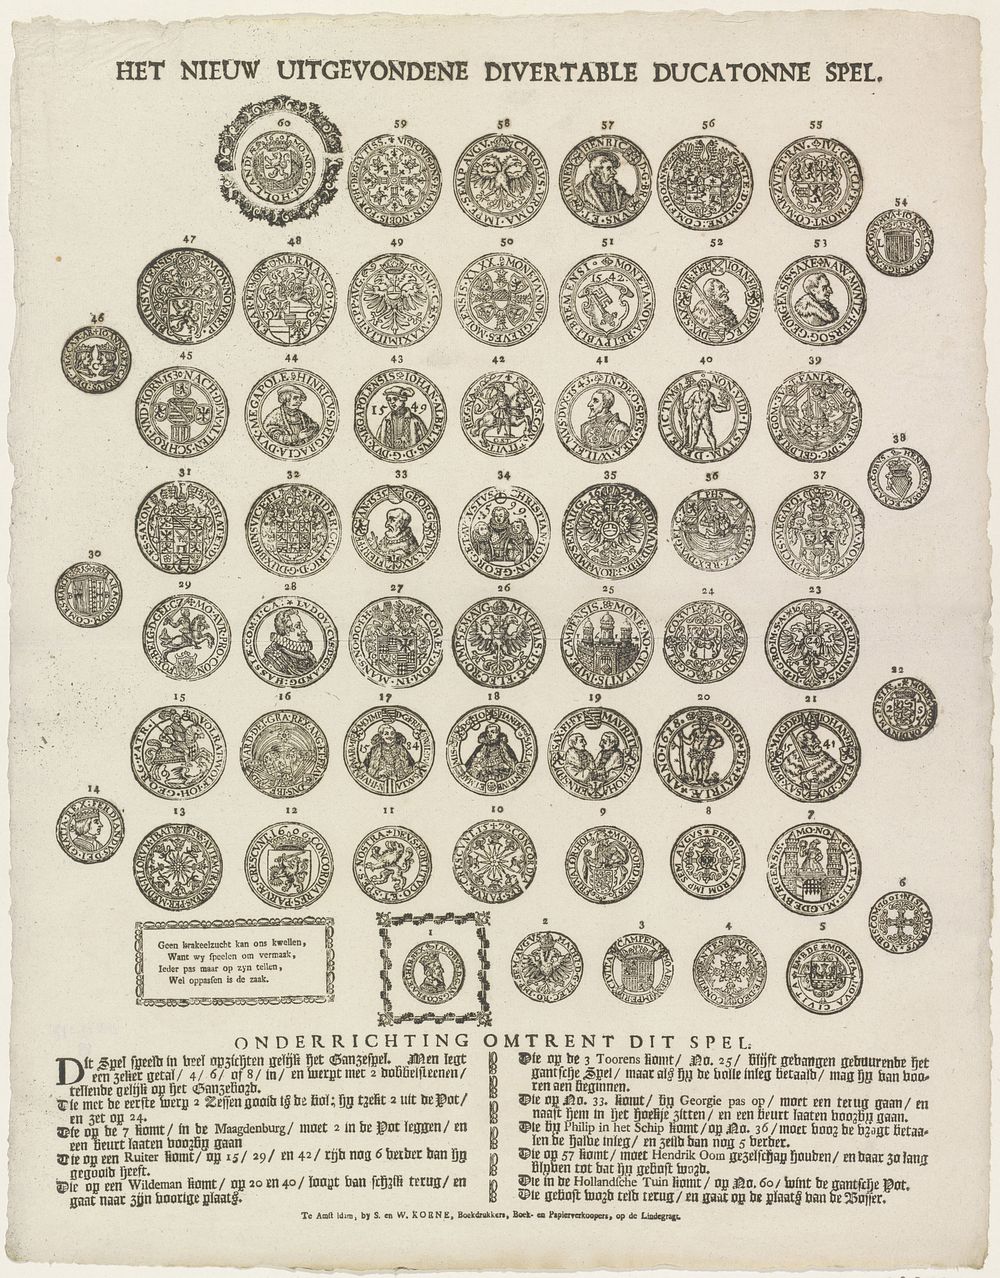 Het nieuw uitgevondene divertable ducatonne spel (1781 - 1800) by S  and W Koene